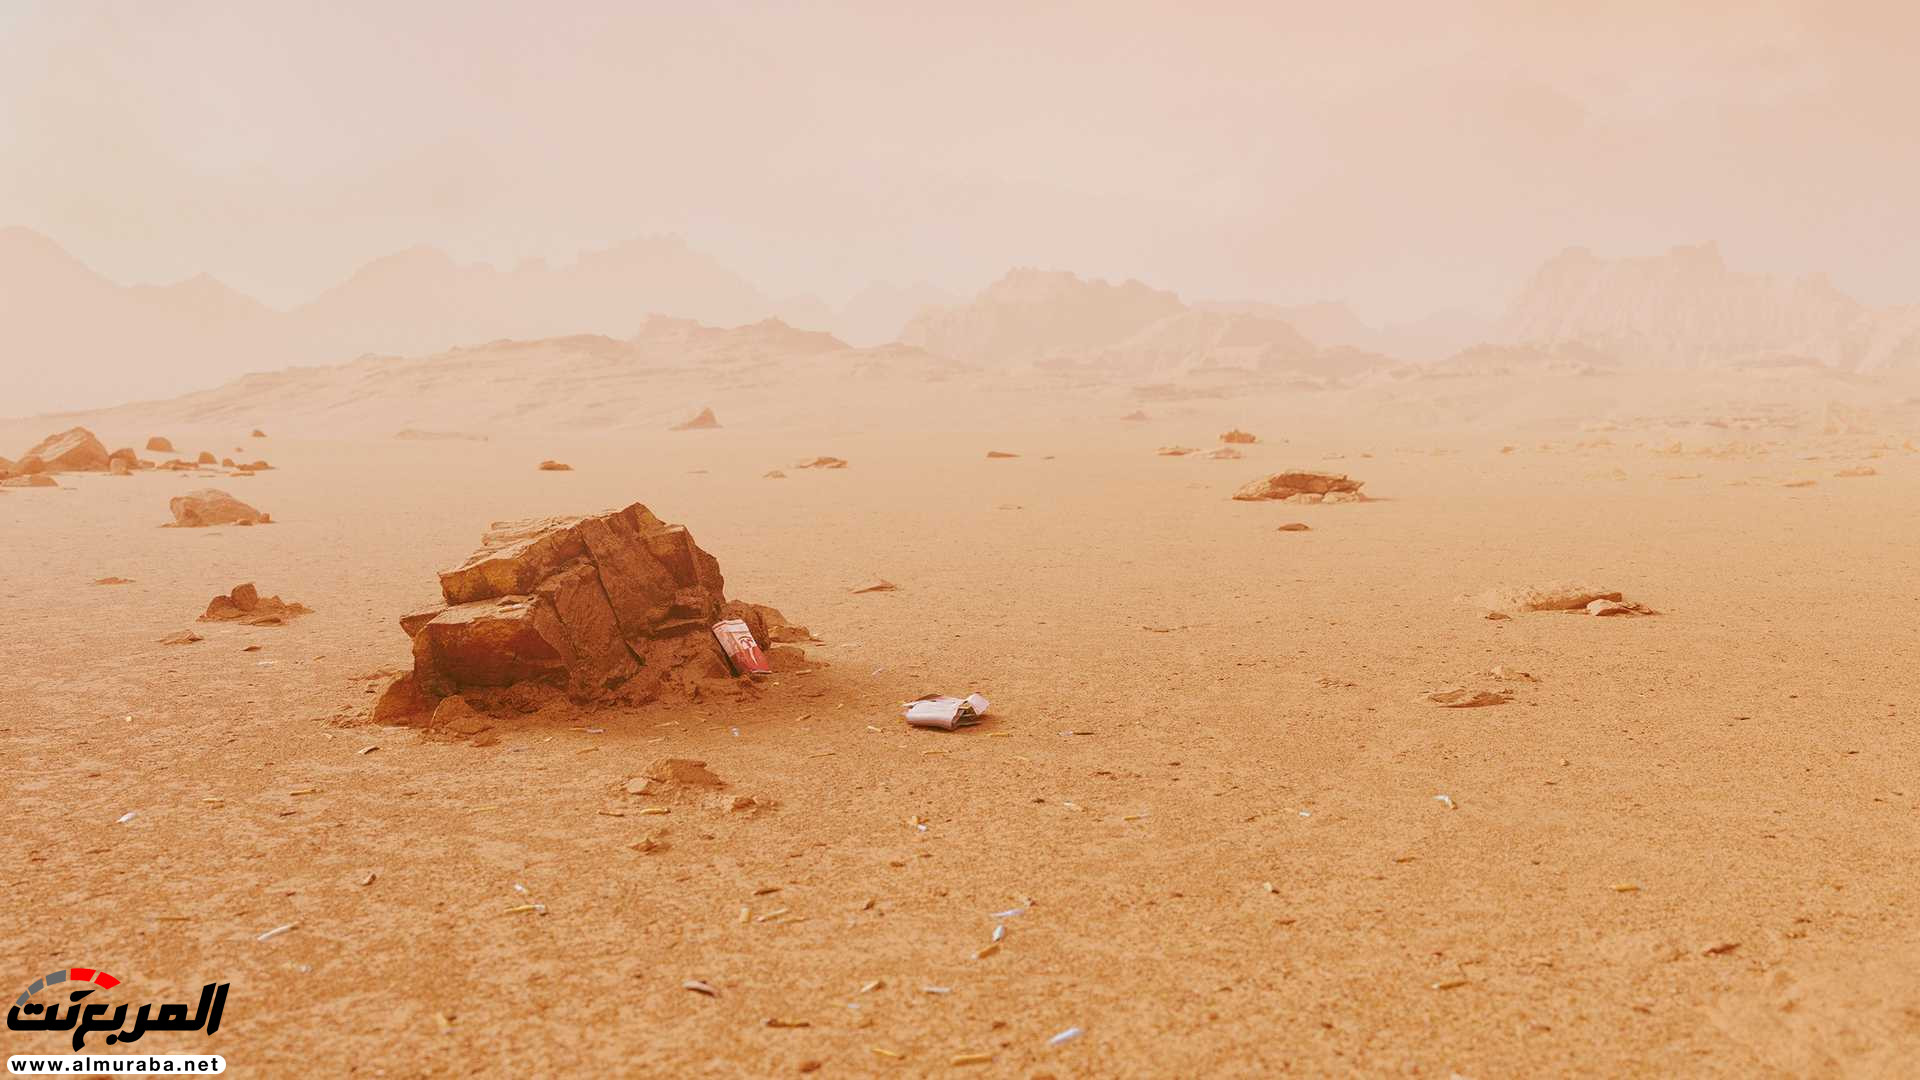 تيسلا رودستر وصلت إلى المريخ في صور تخيلية 5